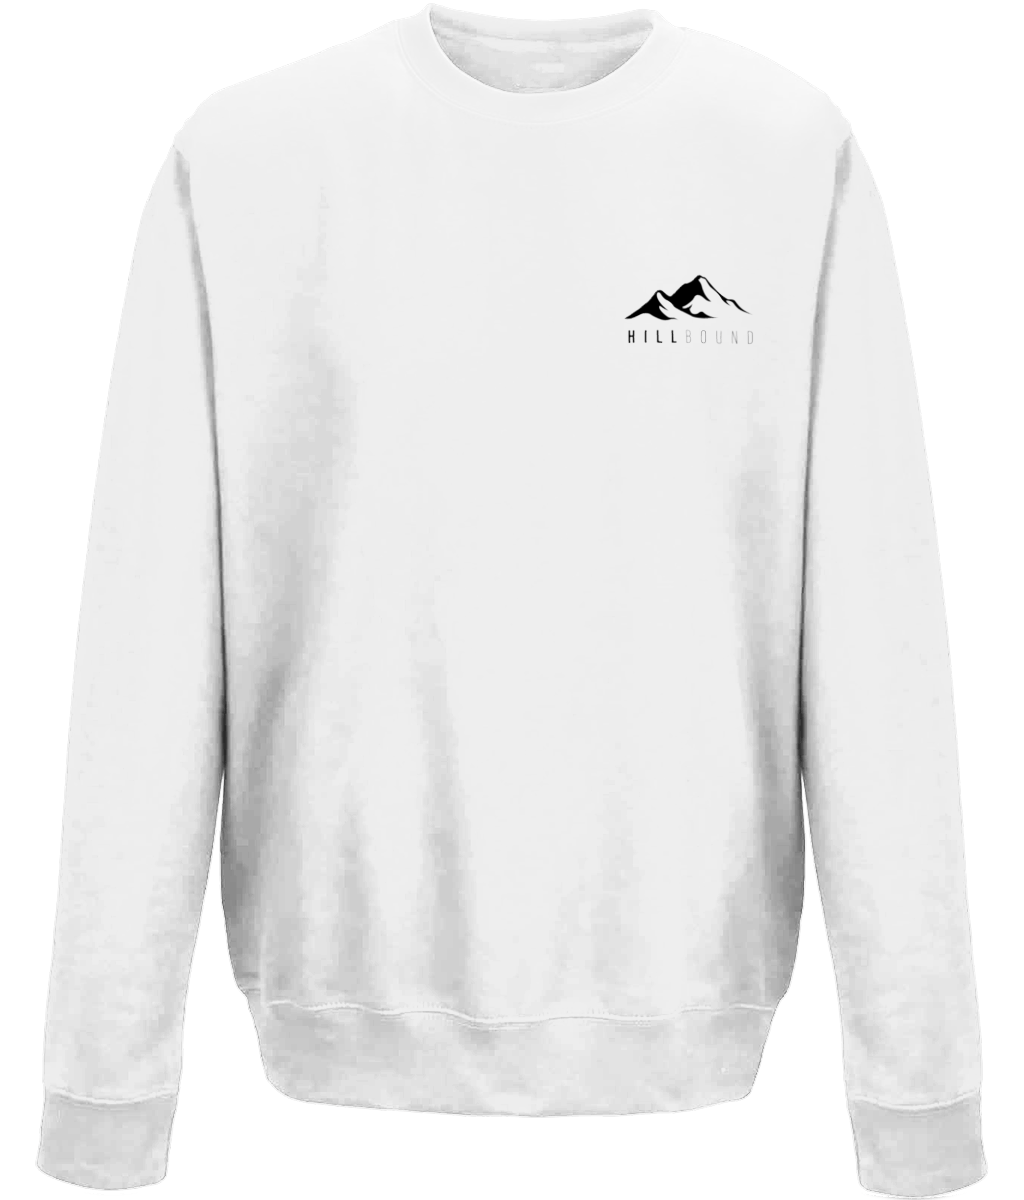 Hillbound Cotton Sweatshirt